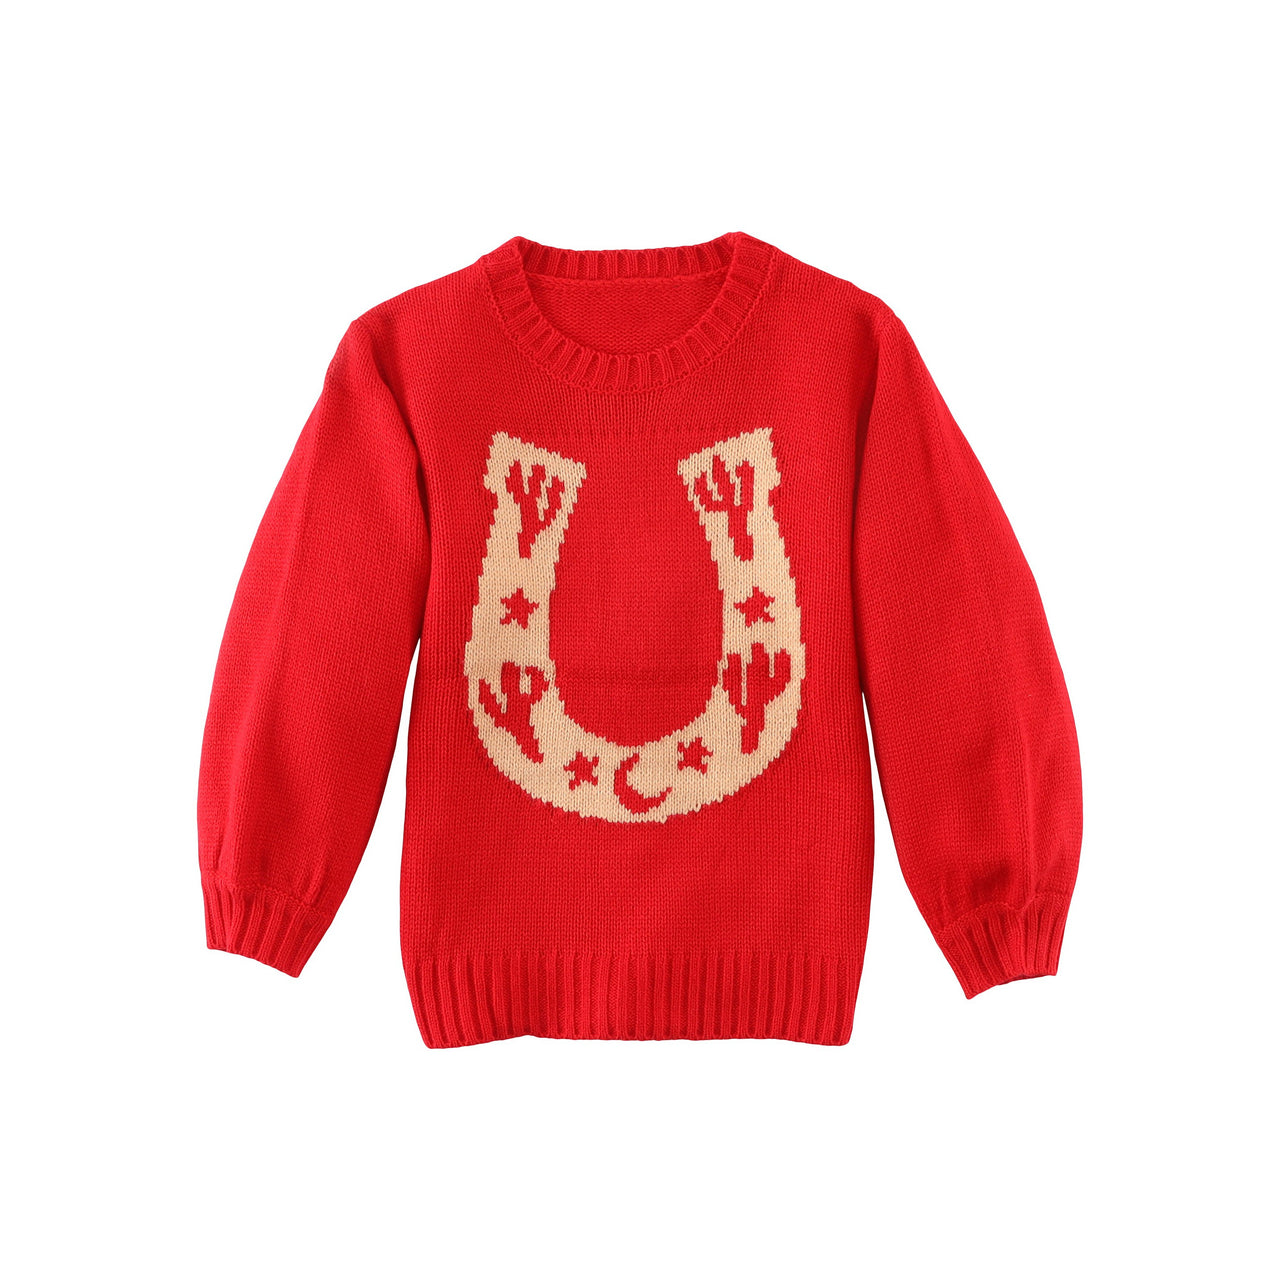 Wrangler Girl's Sweater - Red